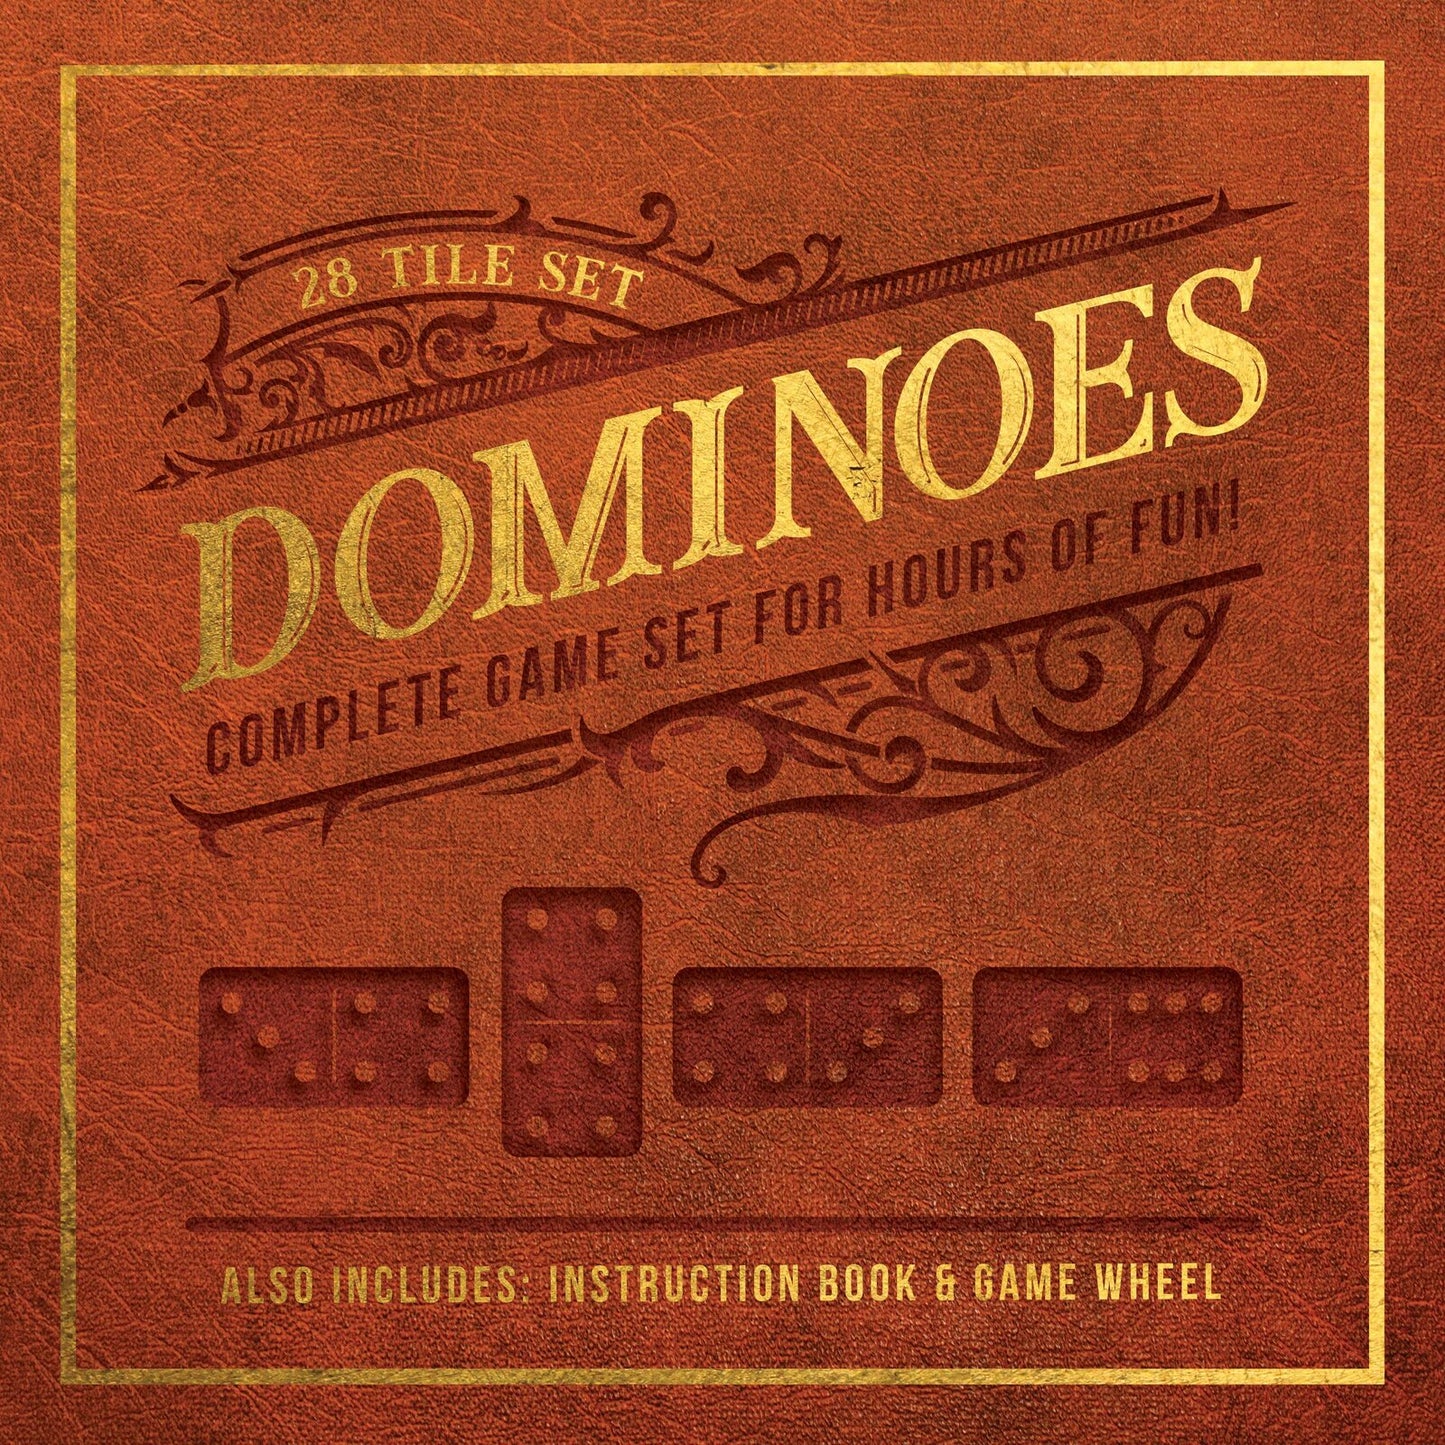 Dominoes: 28 Tile Set Complete Game Set